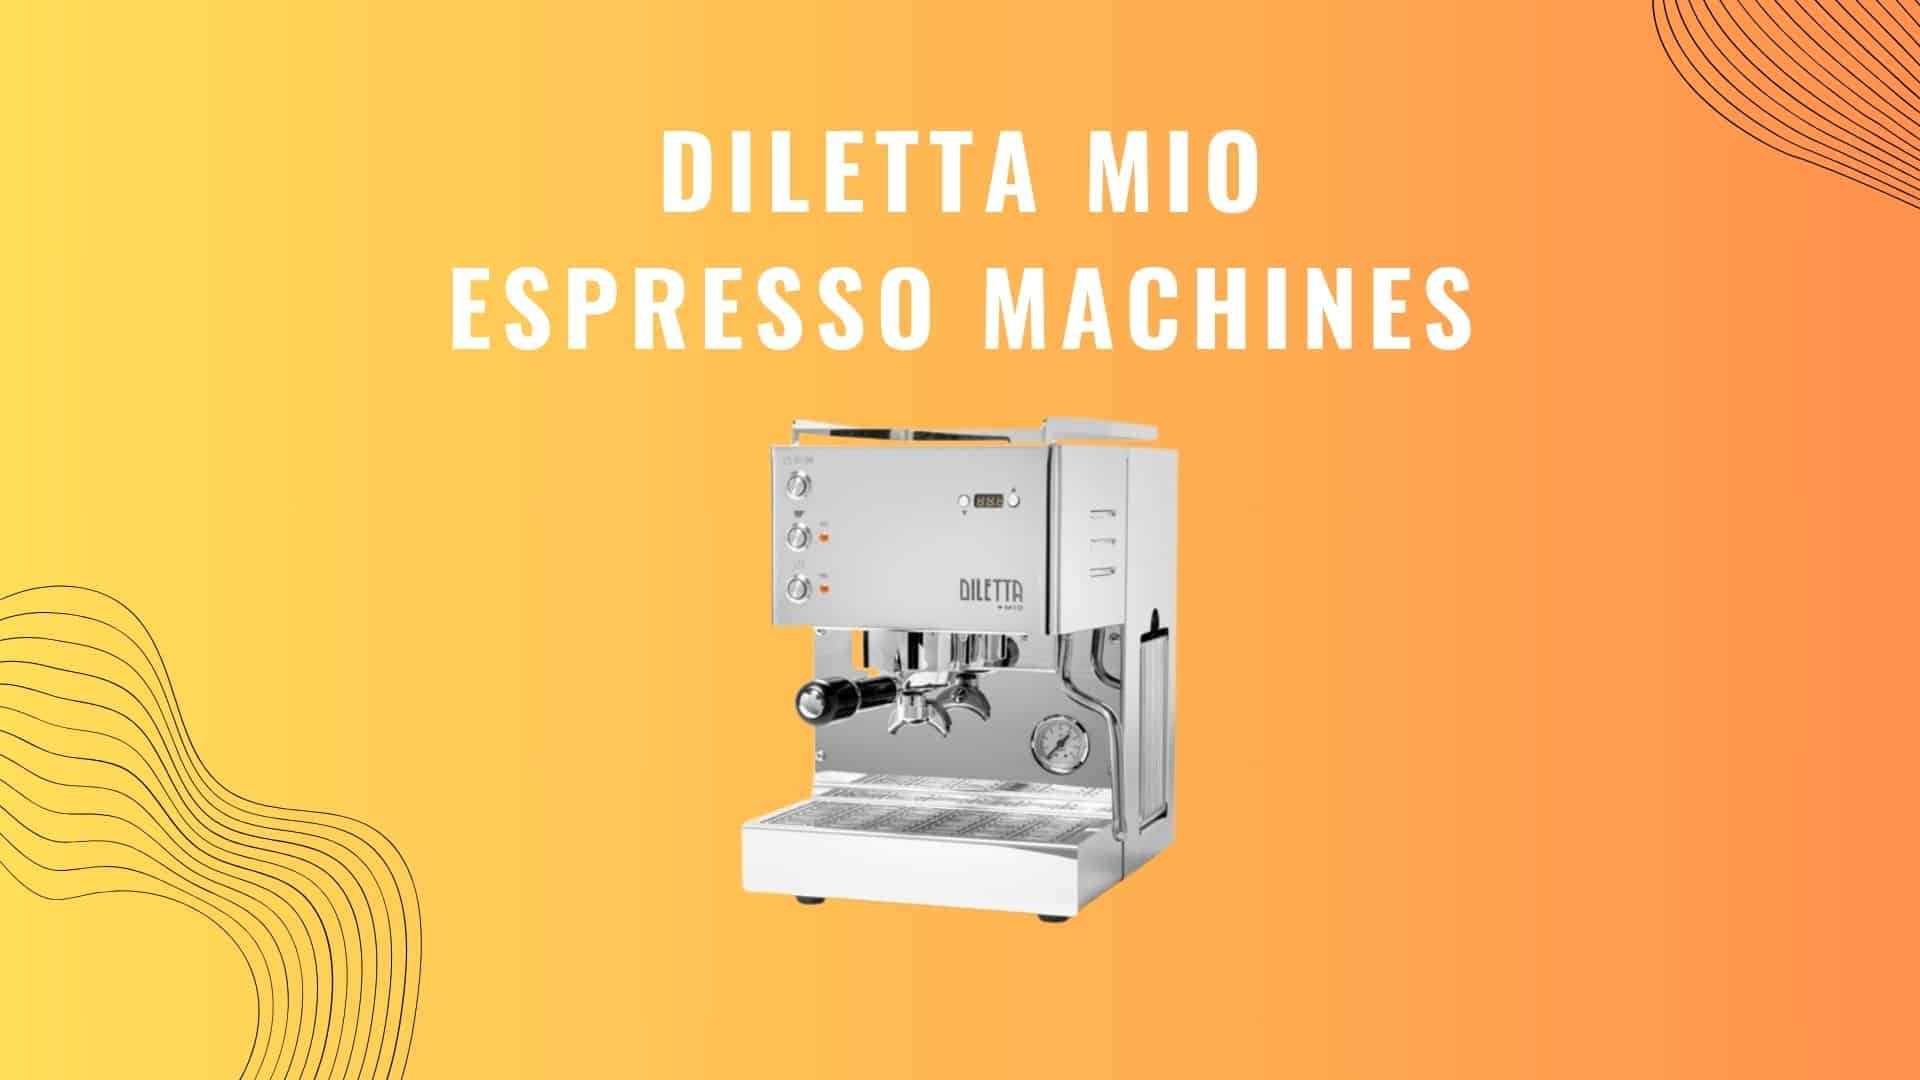 Diletta Mio Espresso machines, Discover features, pros and cons of Diletta Mio Espresso Machines